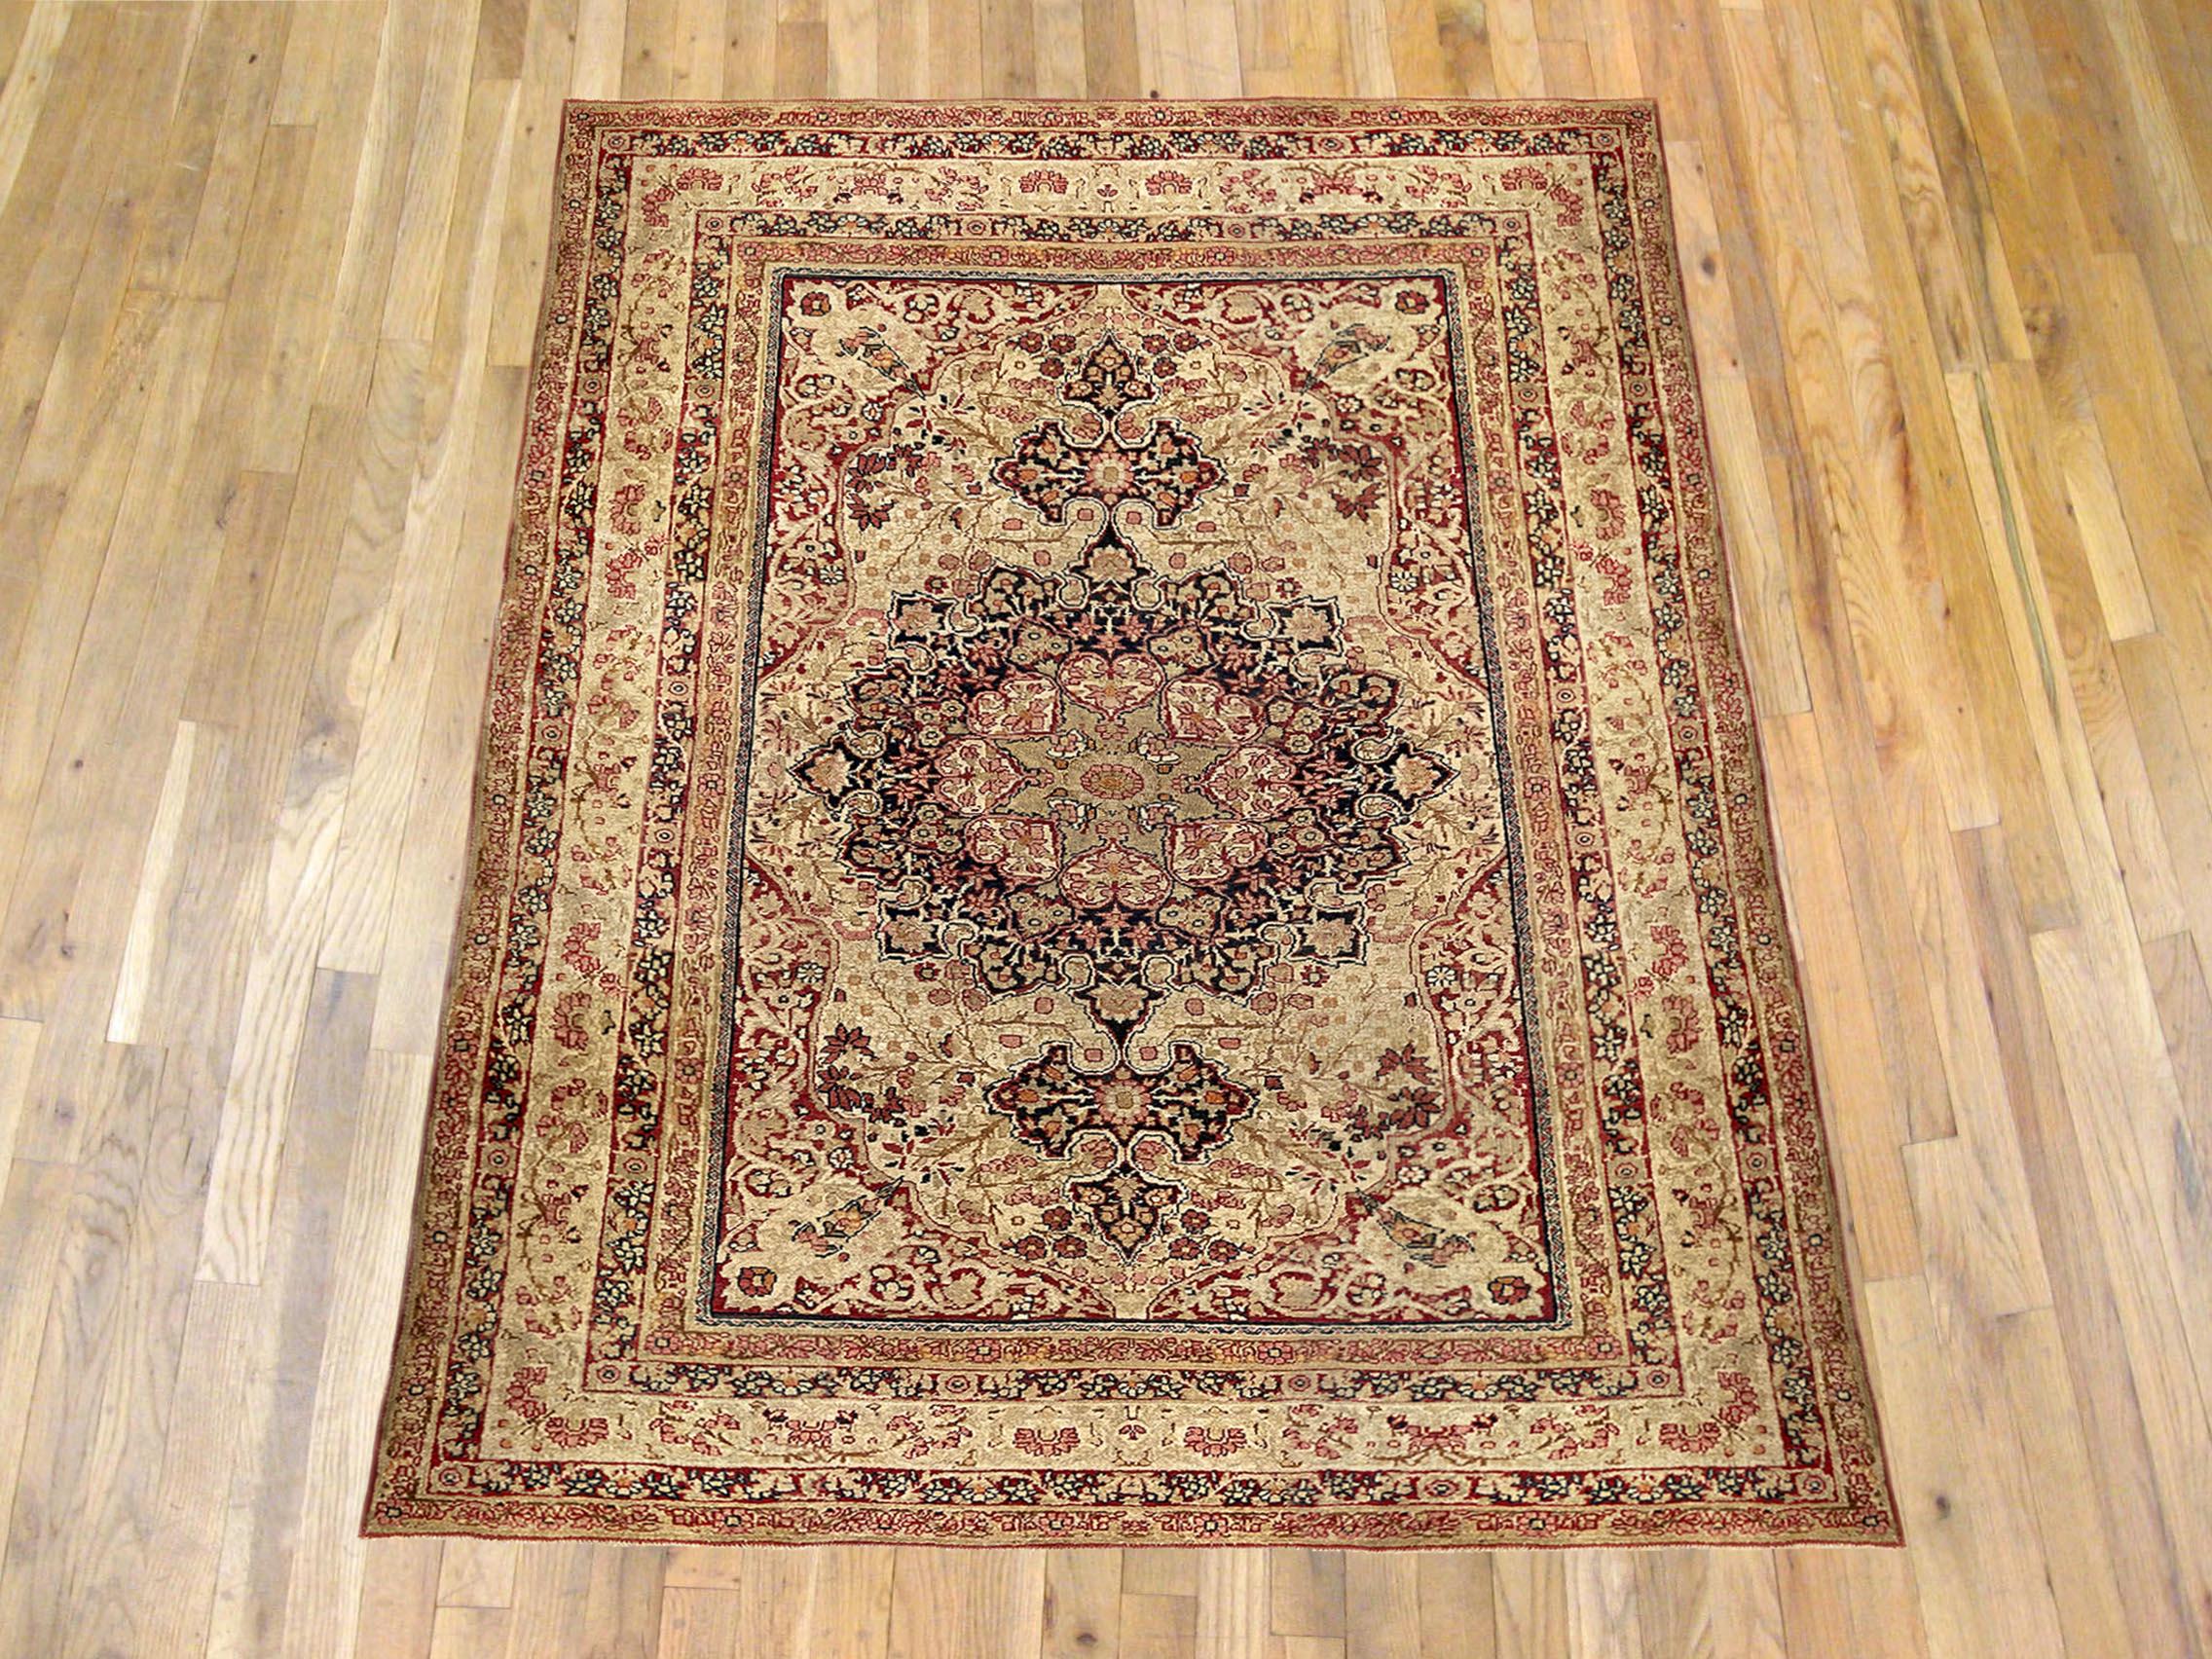 Antique Persian Lavar Oriental carpet, Small Size, circa 1890

An antique Persian Lavar oriental carpet, size: 6'8